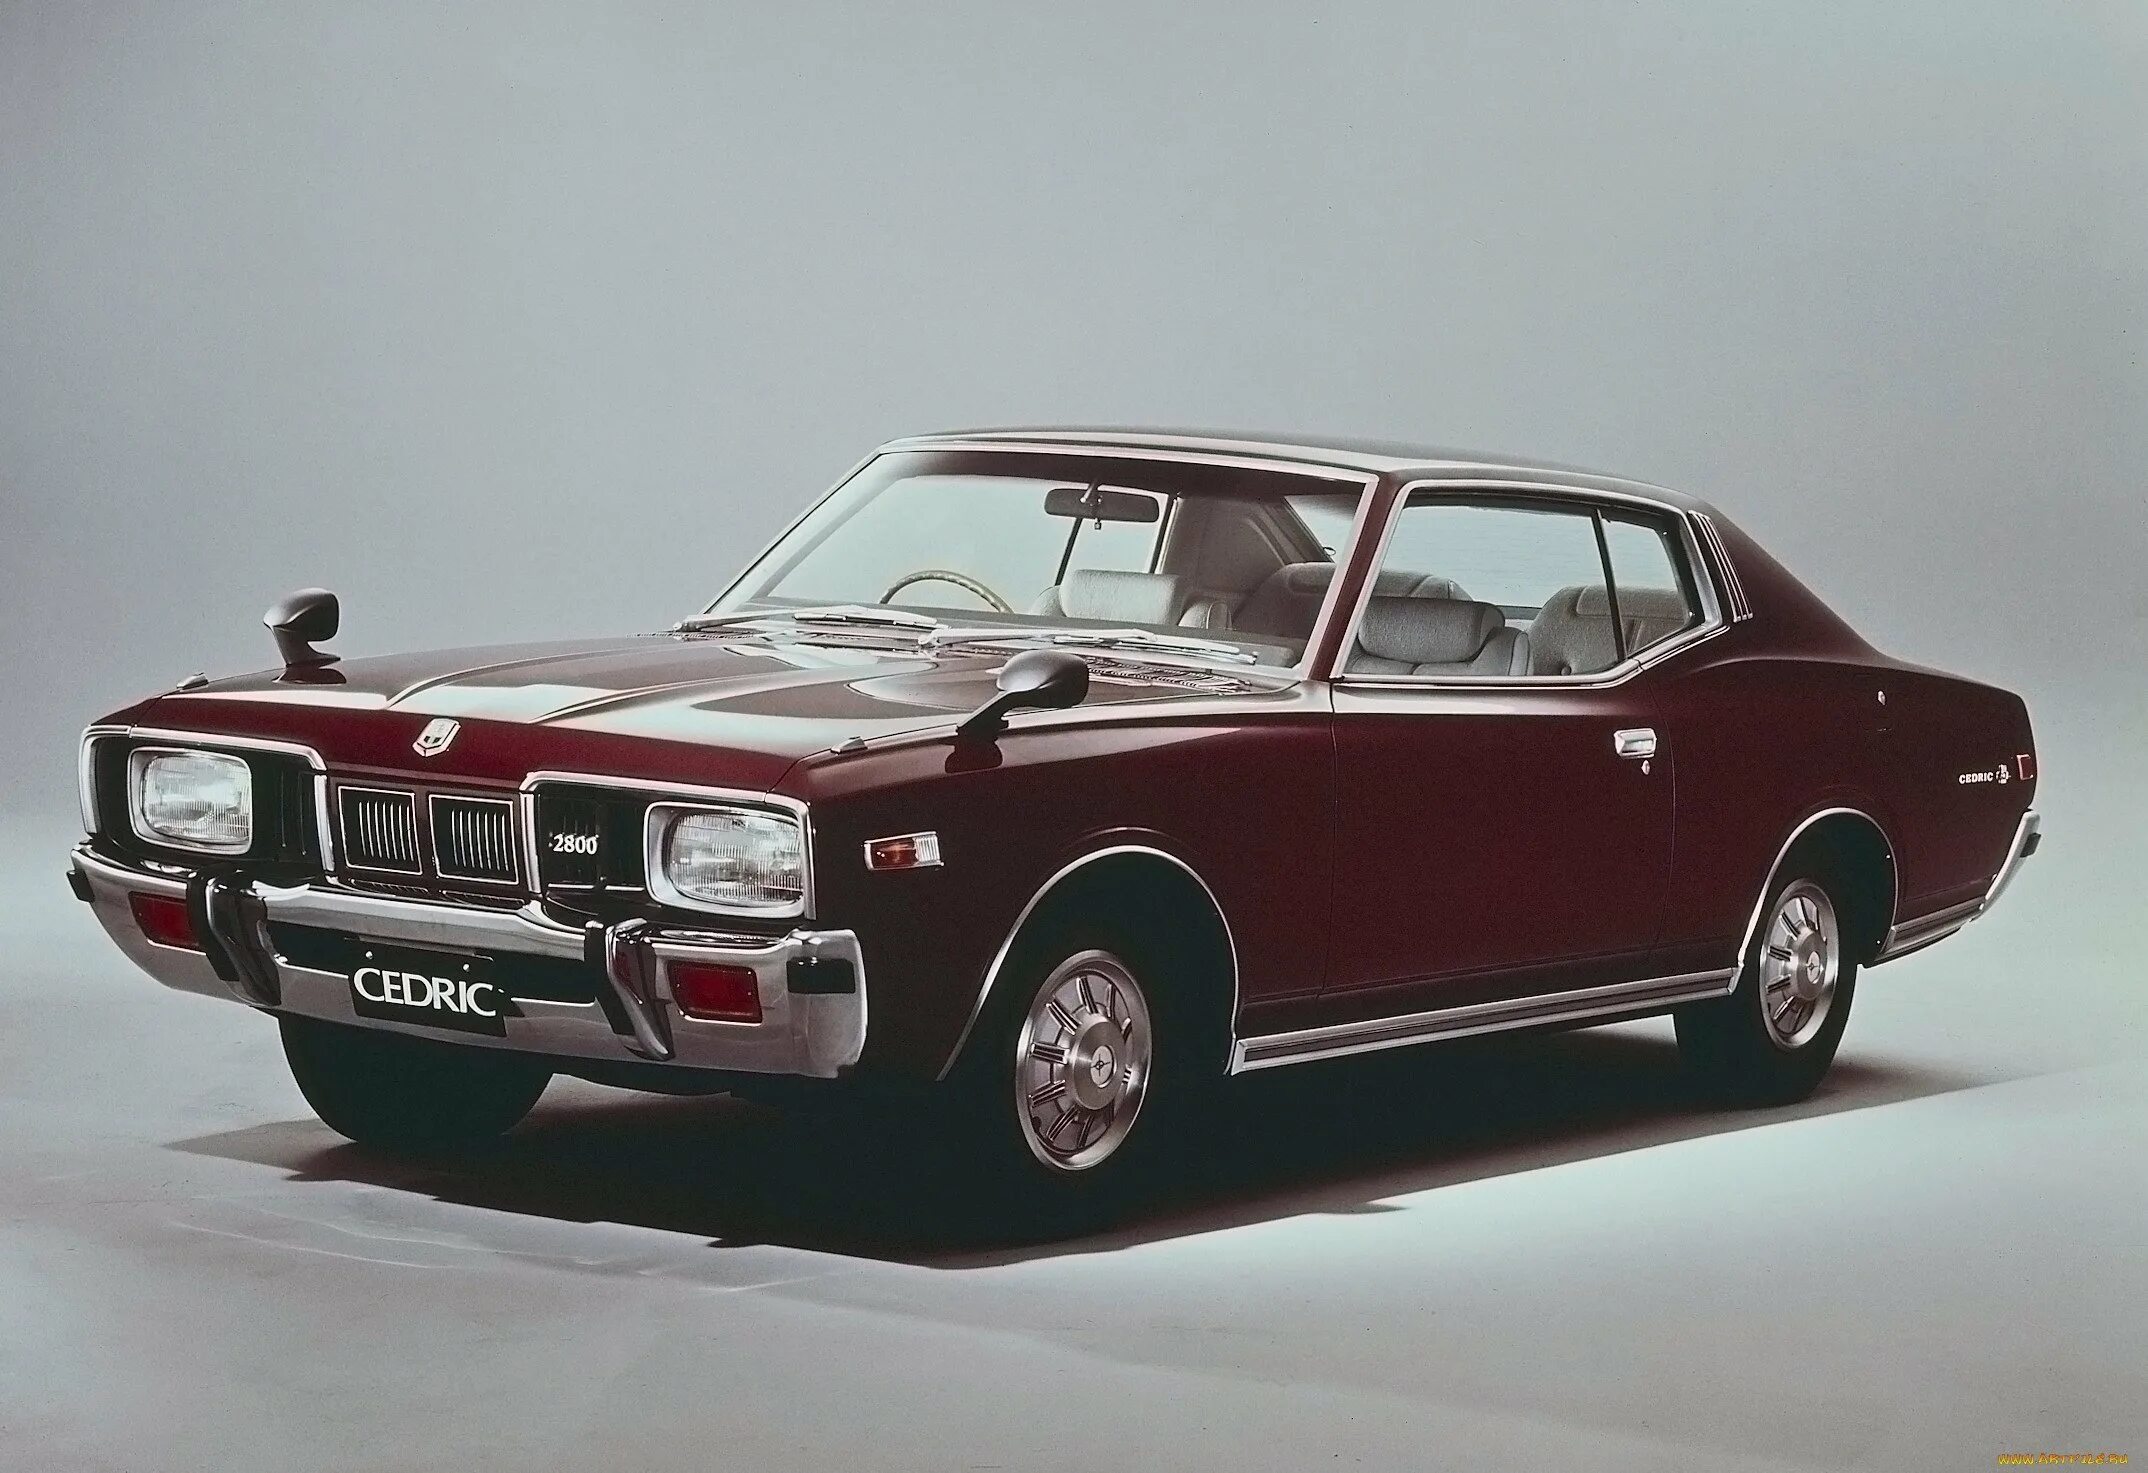 Первое поколение автомобилей. Nissan Cedric 1975. Ниссан Цедрик 1979. Nissan Gloria 1975. Nissan Cedric 330 1979.